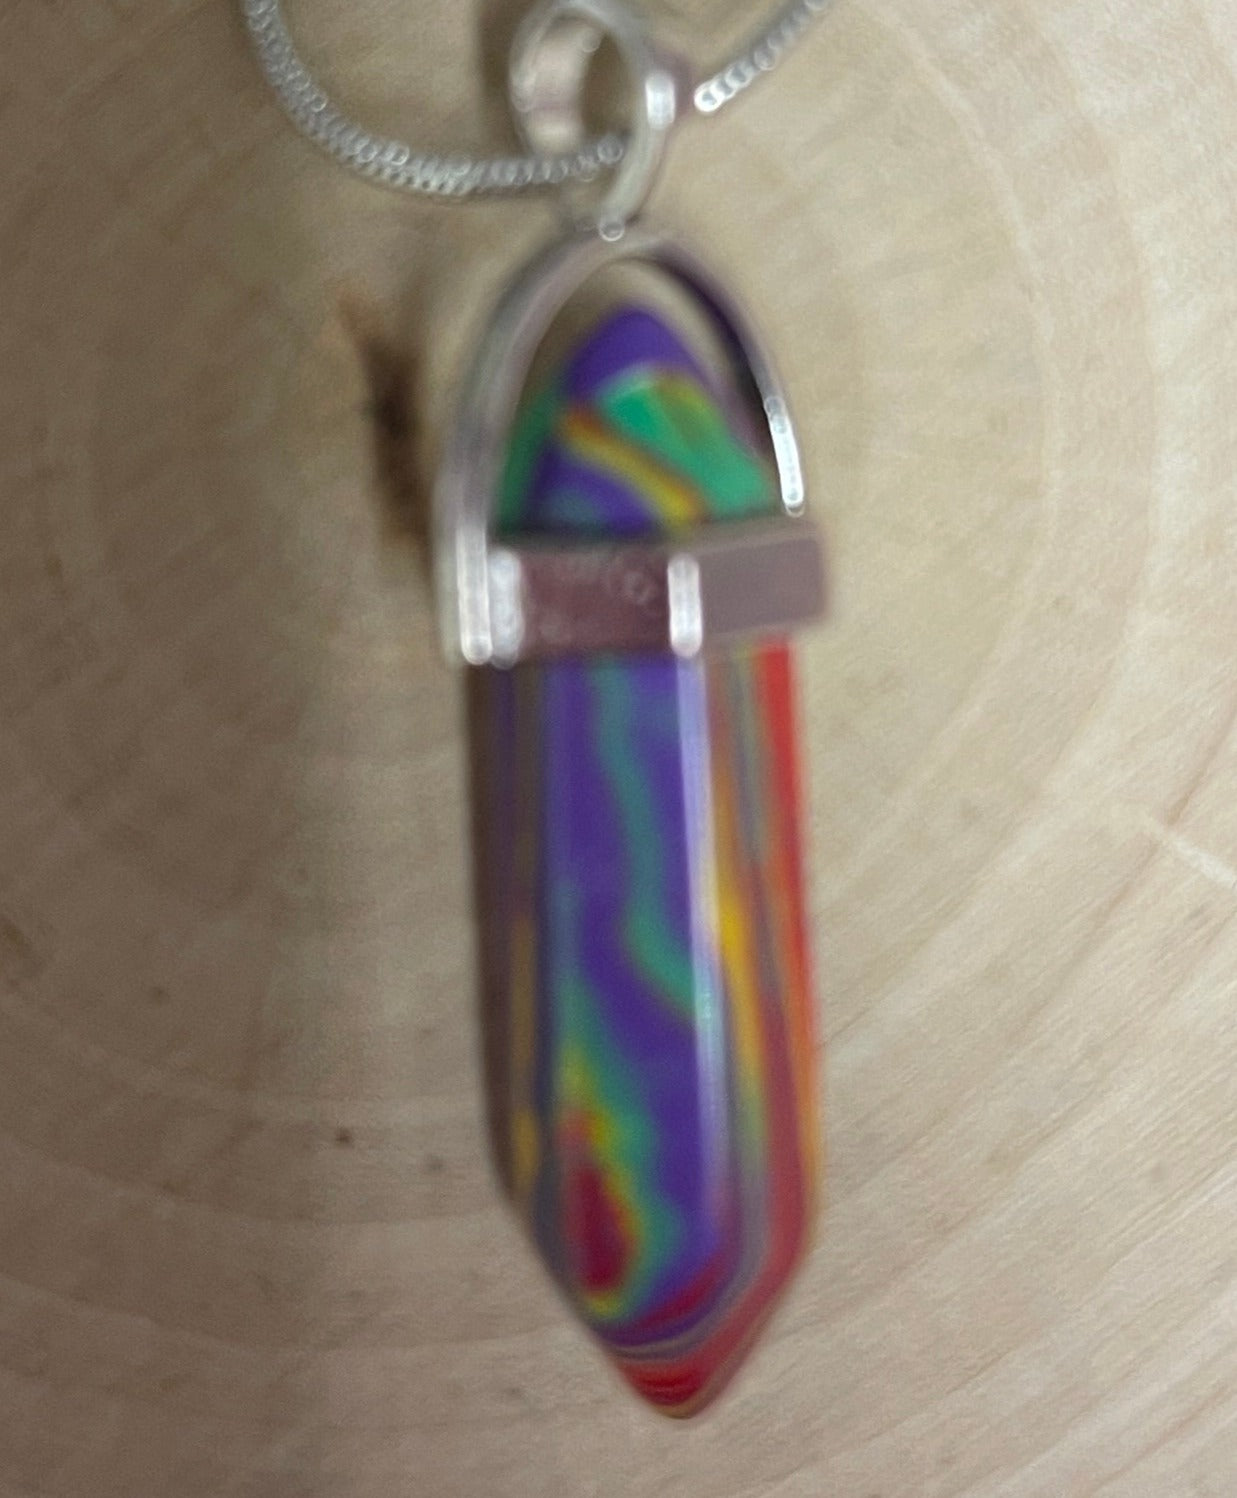 Multi-color Stone DaggerPendant on a Silver chain NecklacePink tiful of LOVE